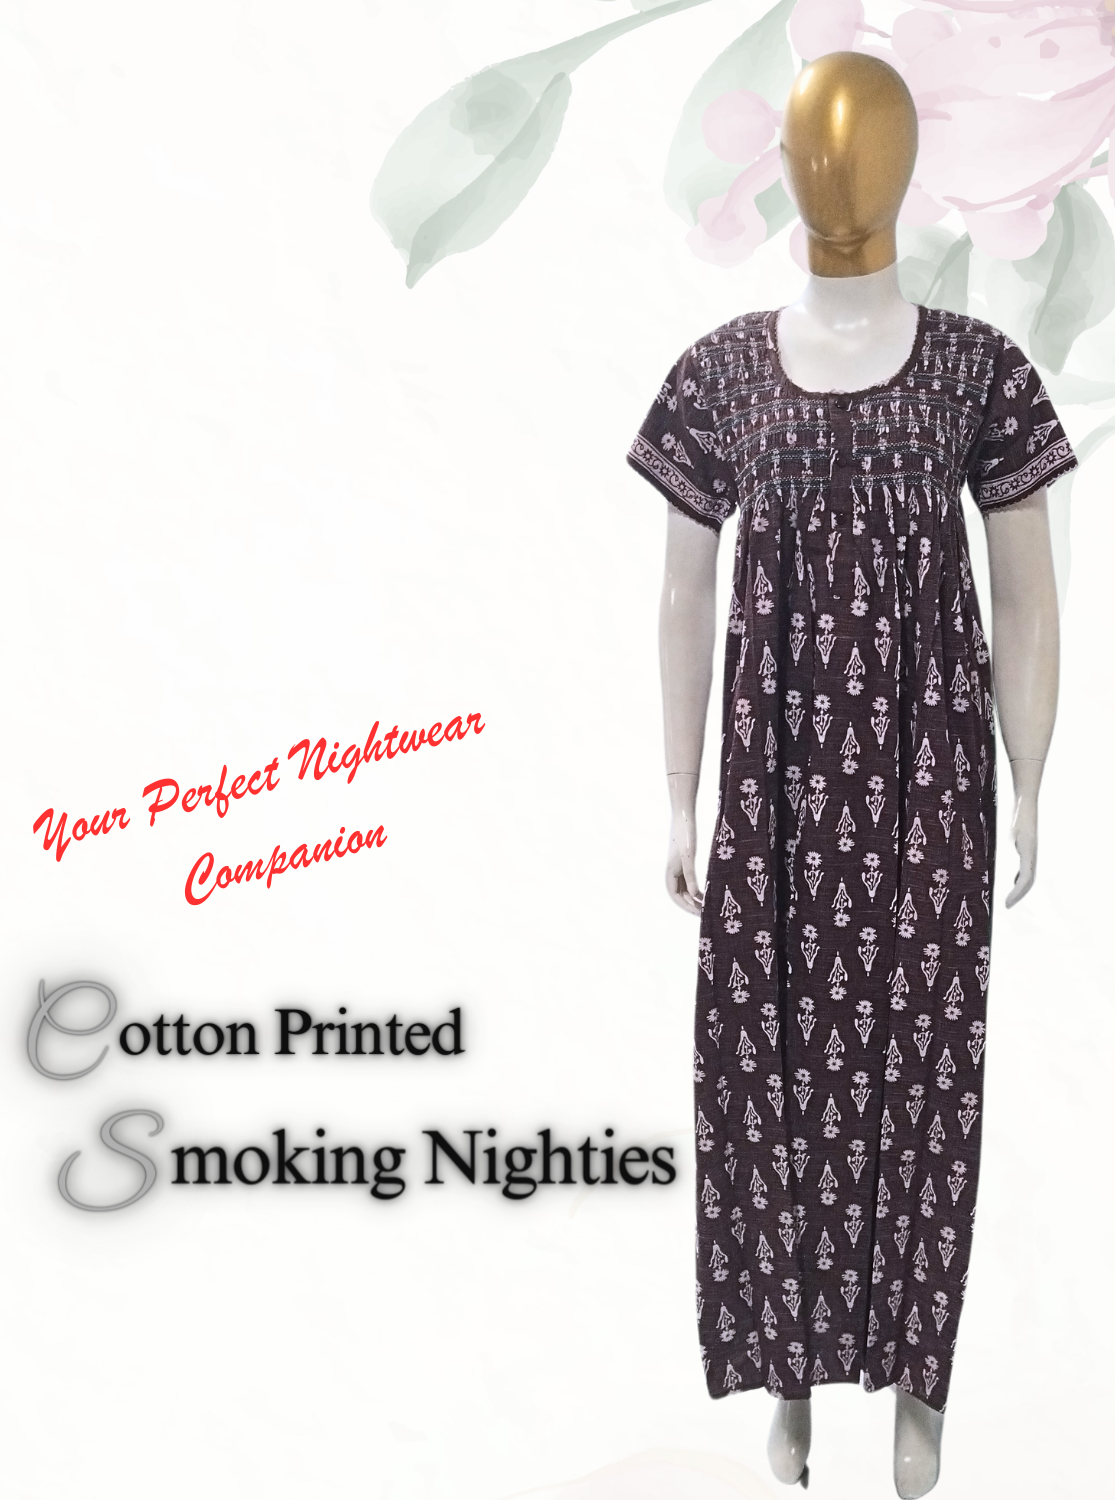 Cotton Printed Smokey Nighties